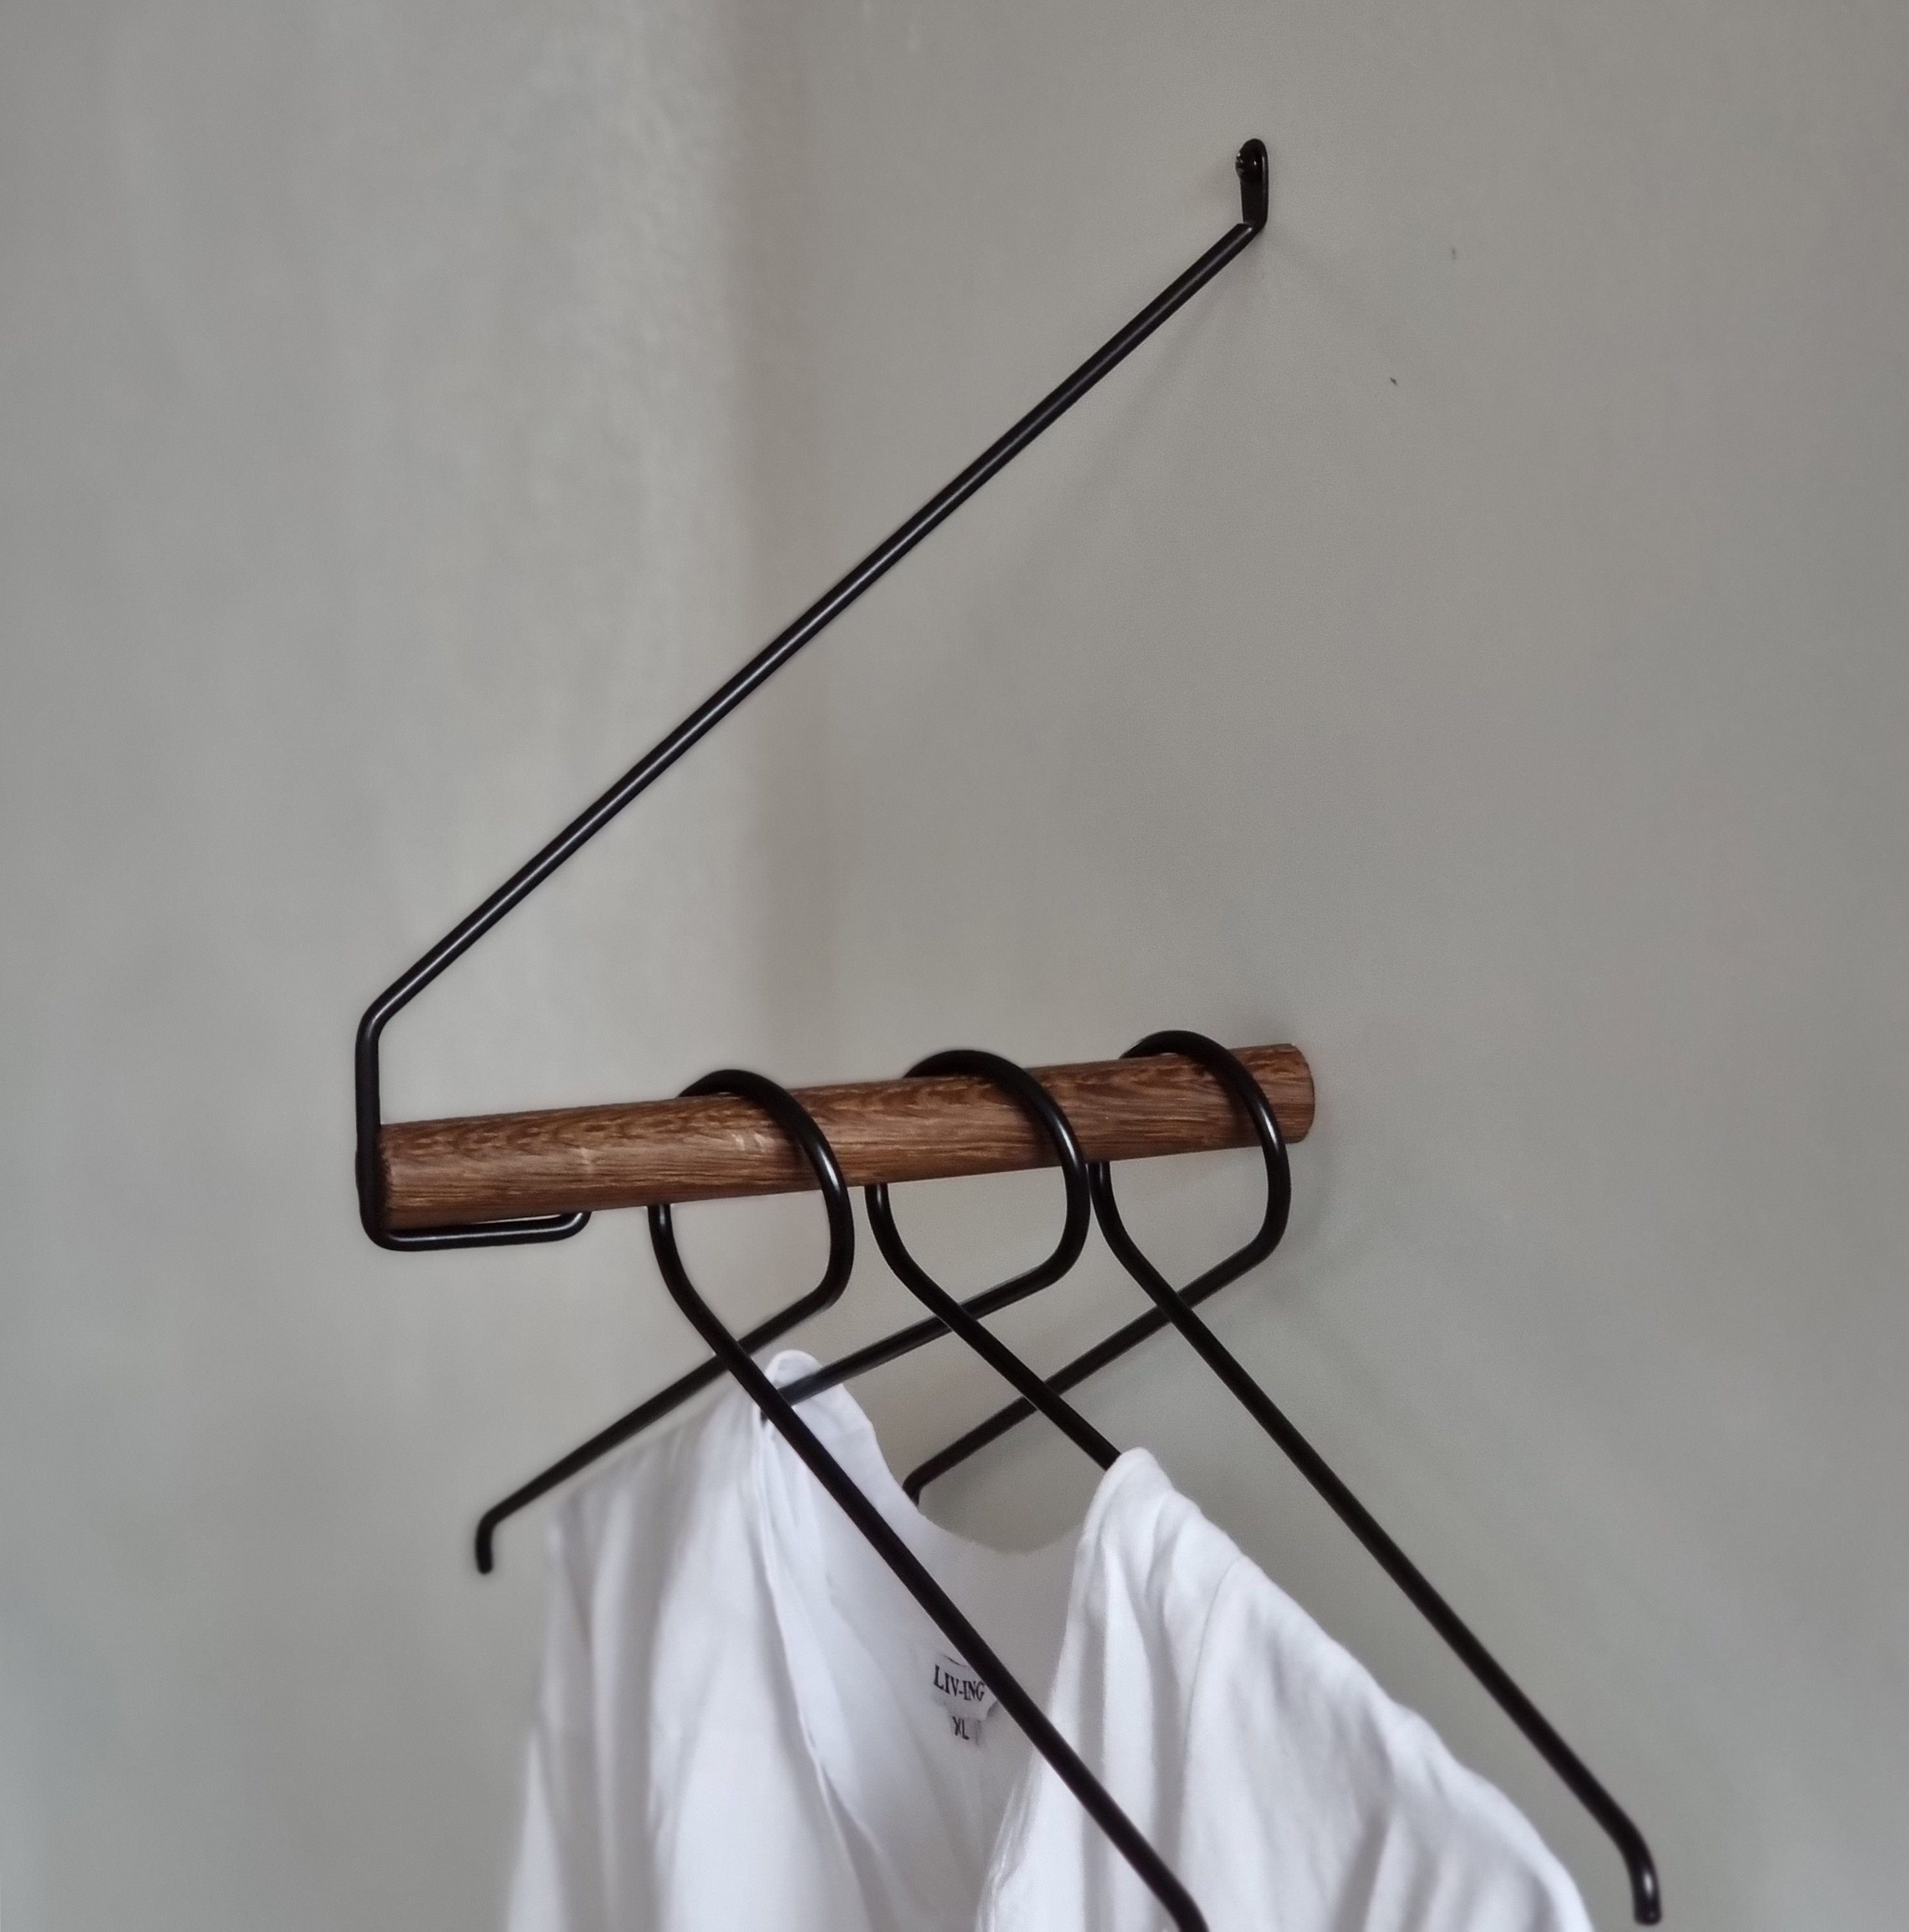 Nordic Function Шафиstange Garderobe "ADD MORE" aus Eichenholz und Metall, minimalistisch skandinavischer Stil, verschiedene Farbvarianten